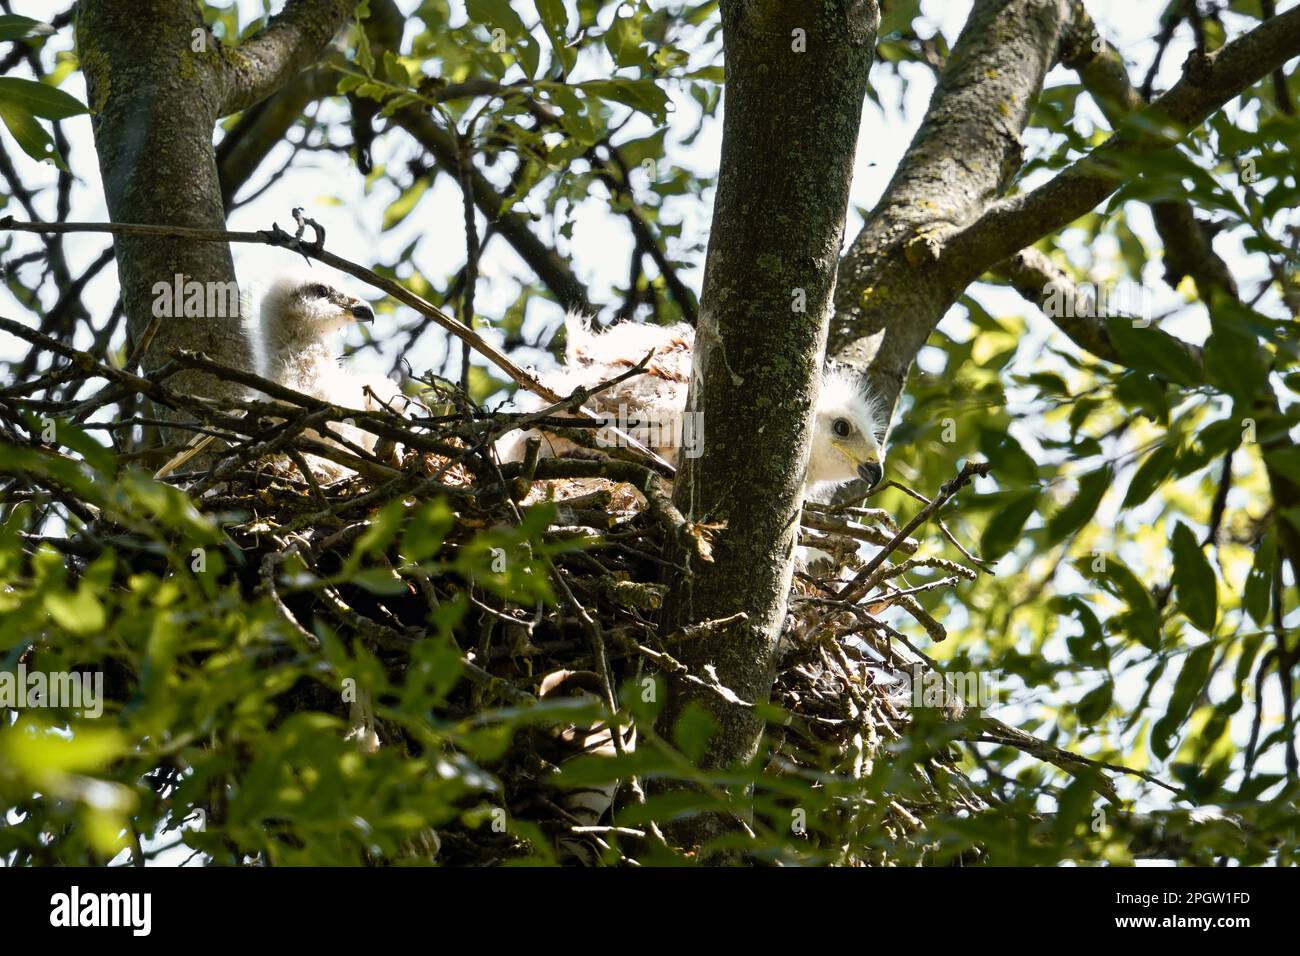 au nid de cerf-volant rouge... Cerf-volant rouge ( Milvus milvus ), 2 jeunes oiseaux en purée, nichés dans leur nid au sommet d'un arbre. Banque D'Images